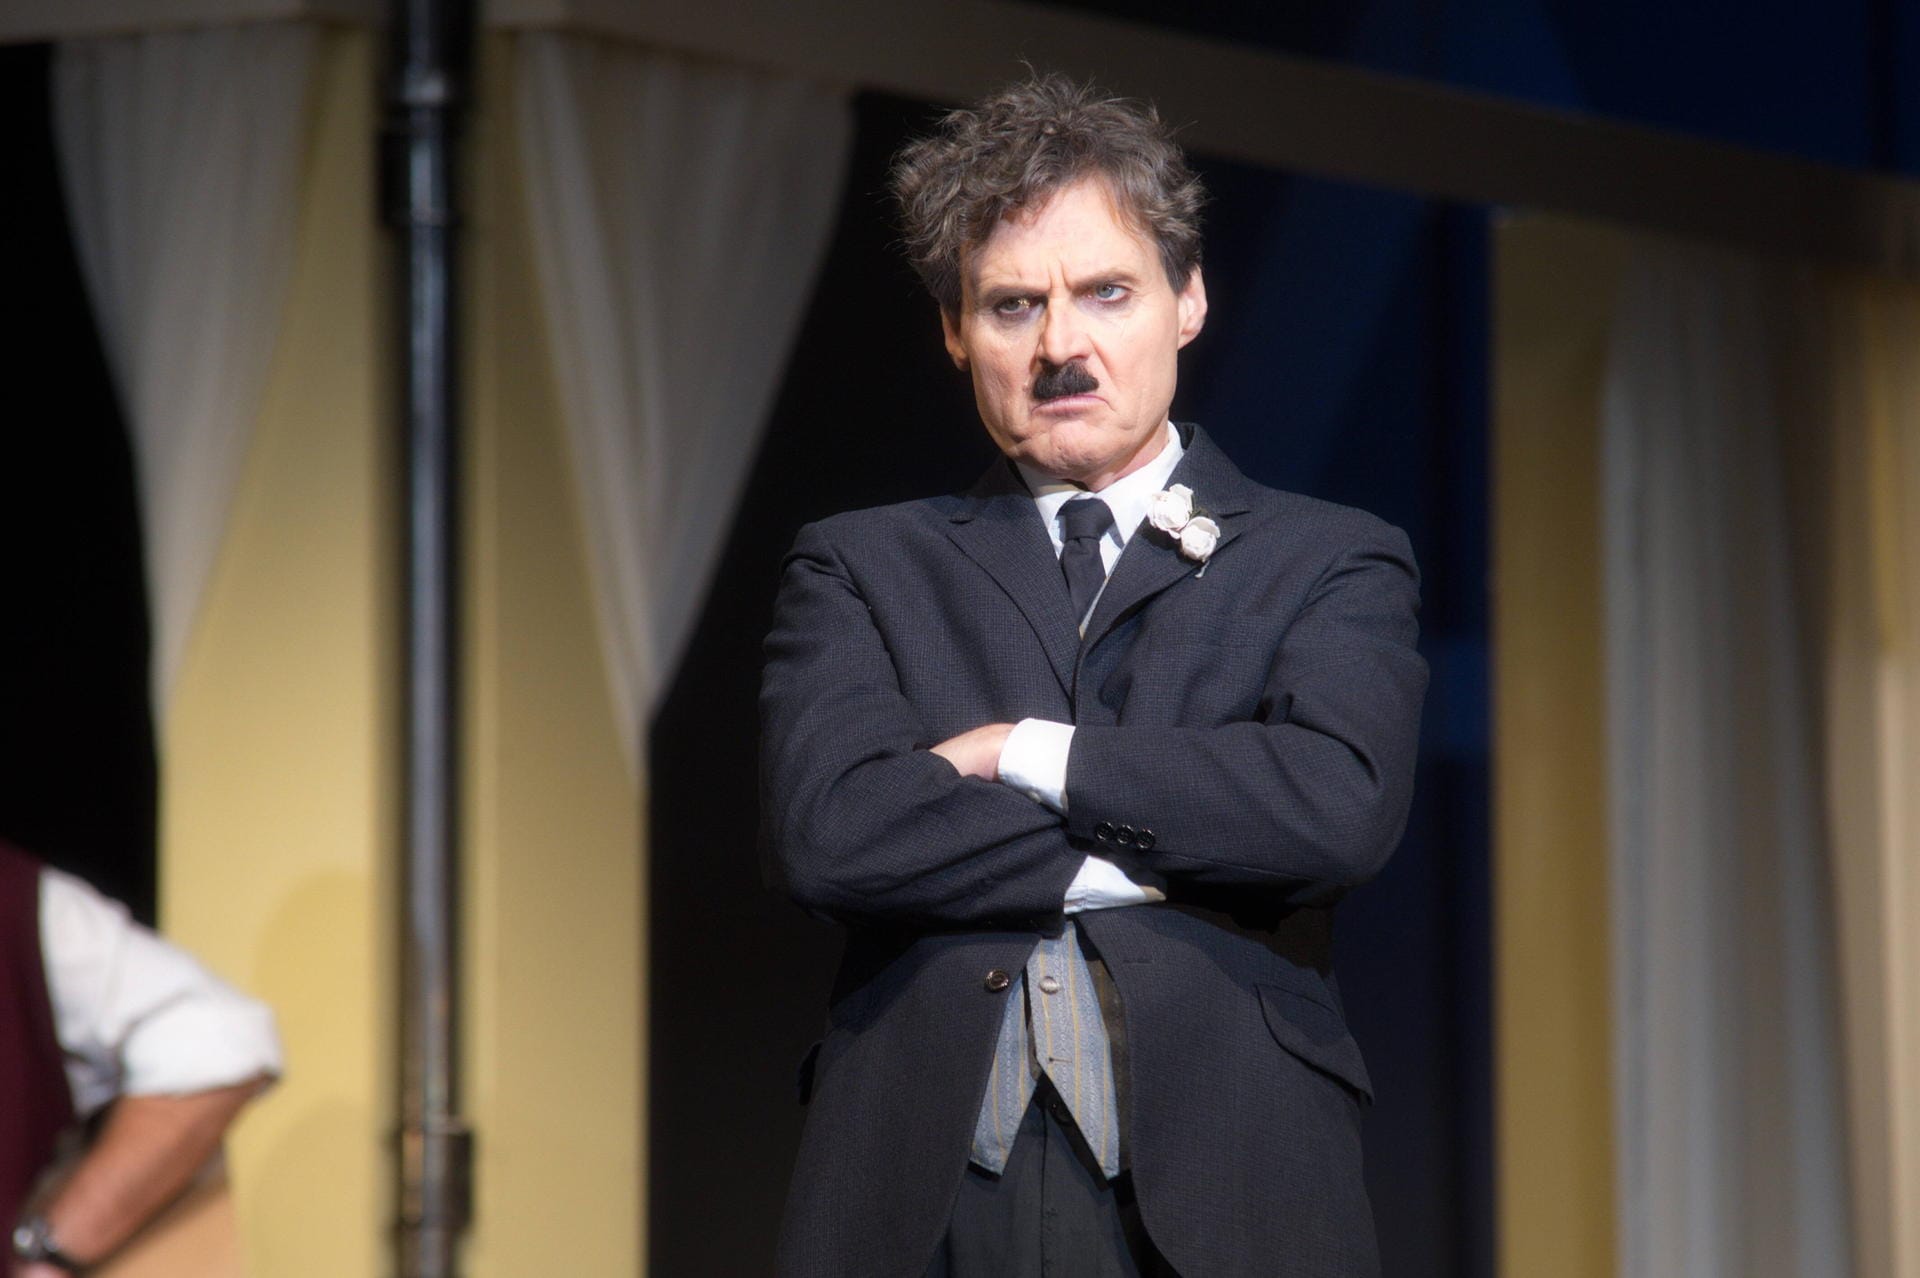 2017: Wolfgang Bahro spielt im Stück "Ein gewisser Charles Spencer Chaplin" im Schlossparktheater in Berlin Charlie Chaplin.